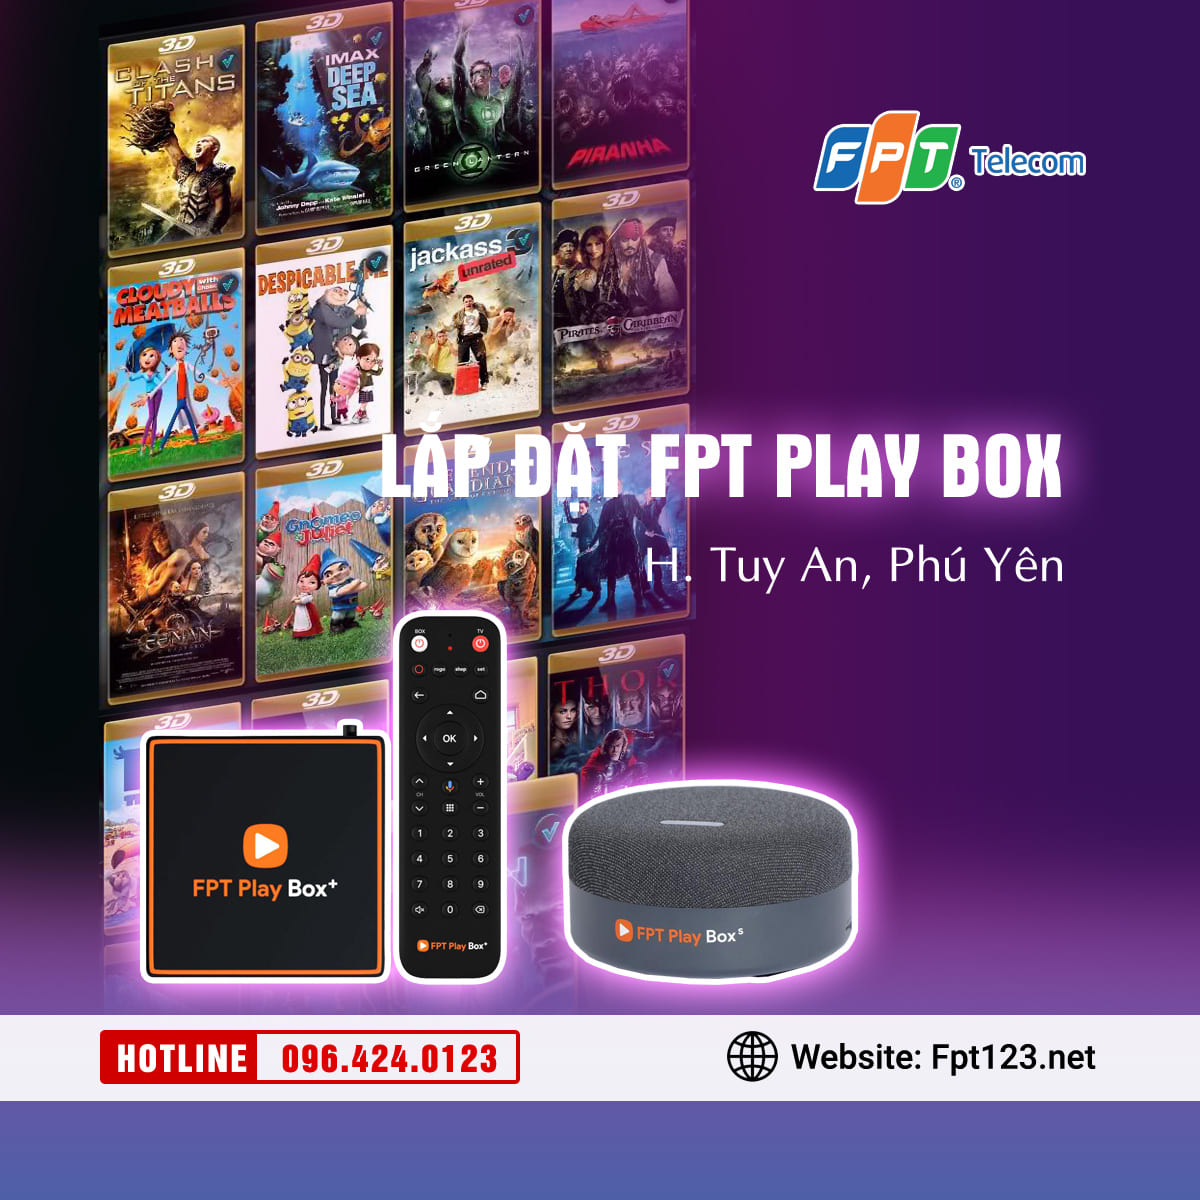 Lắp đặt FPT Play Box ở huyện Tuy An, Phú Yên